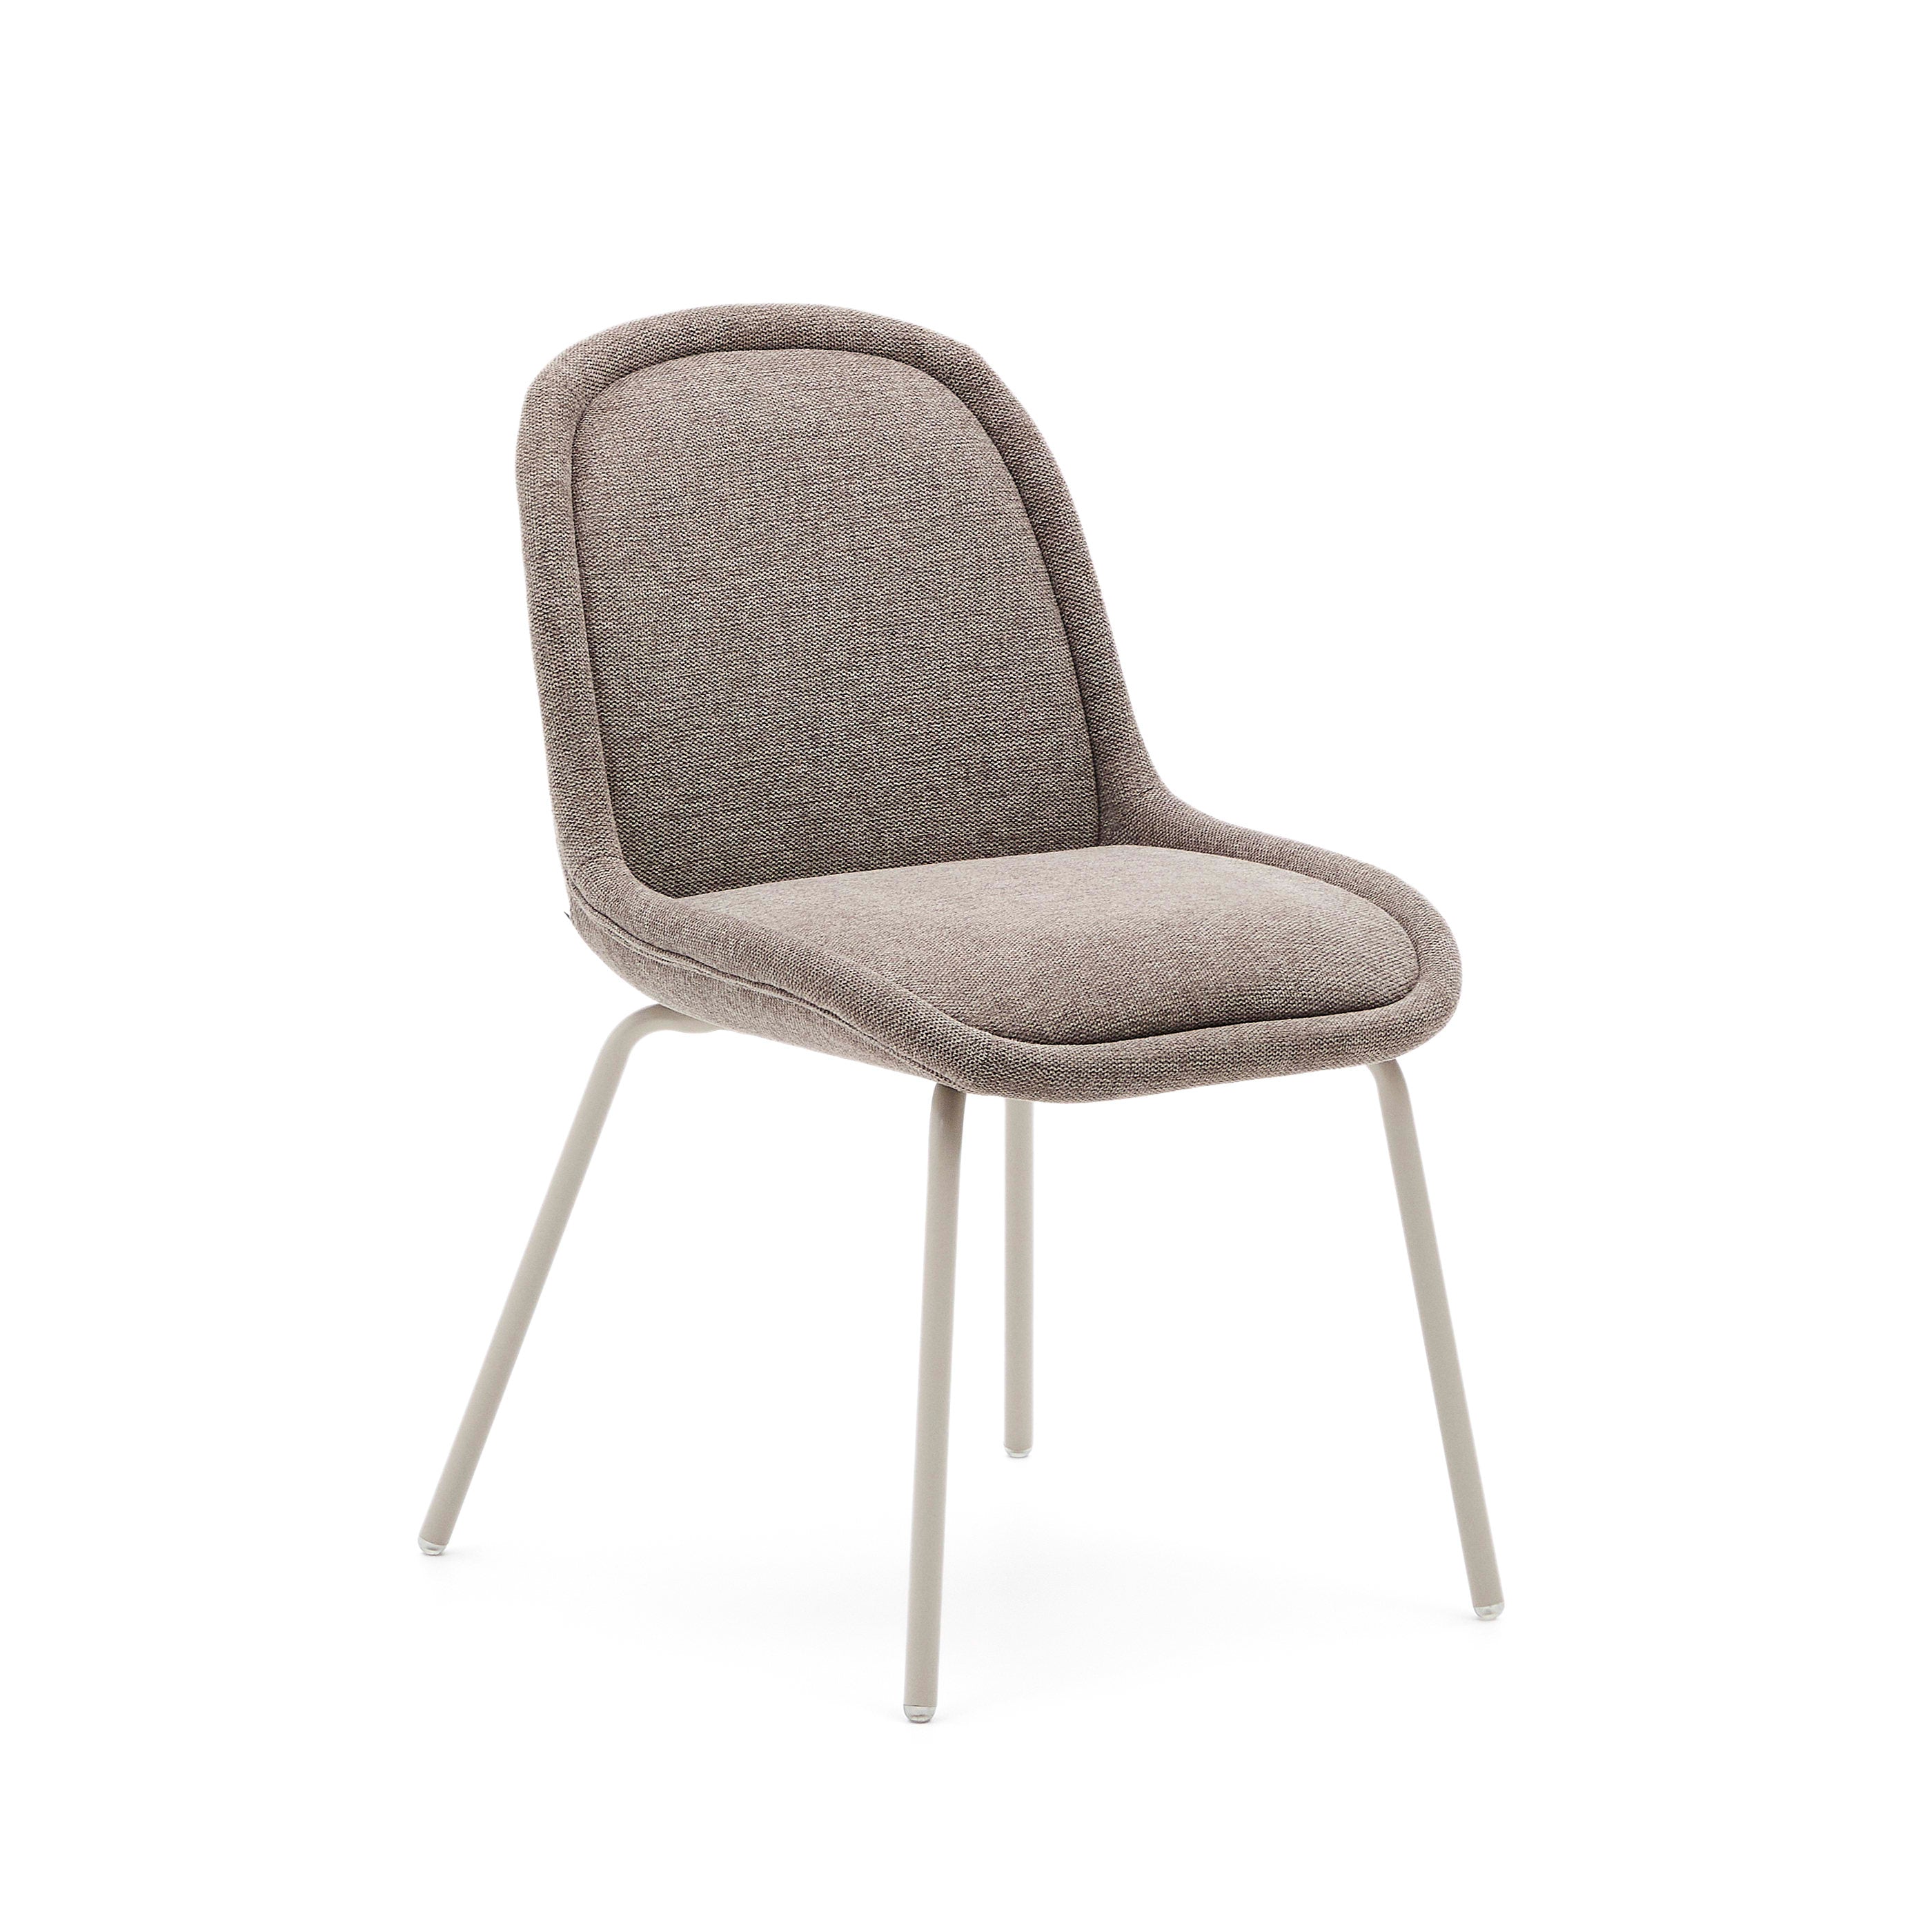 Aimin szék barna chenille anyagból és acél lábakkal, matt bézs festett befejezéssel, FSC Mix Credit